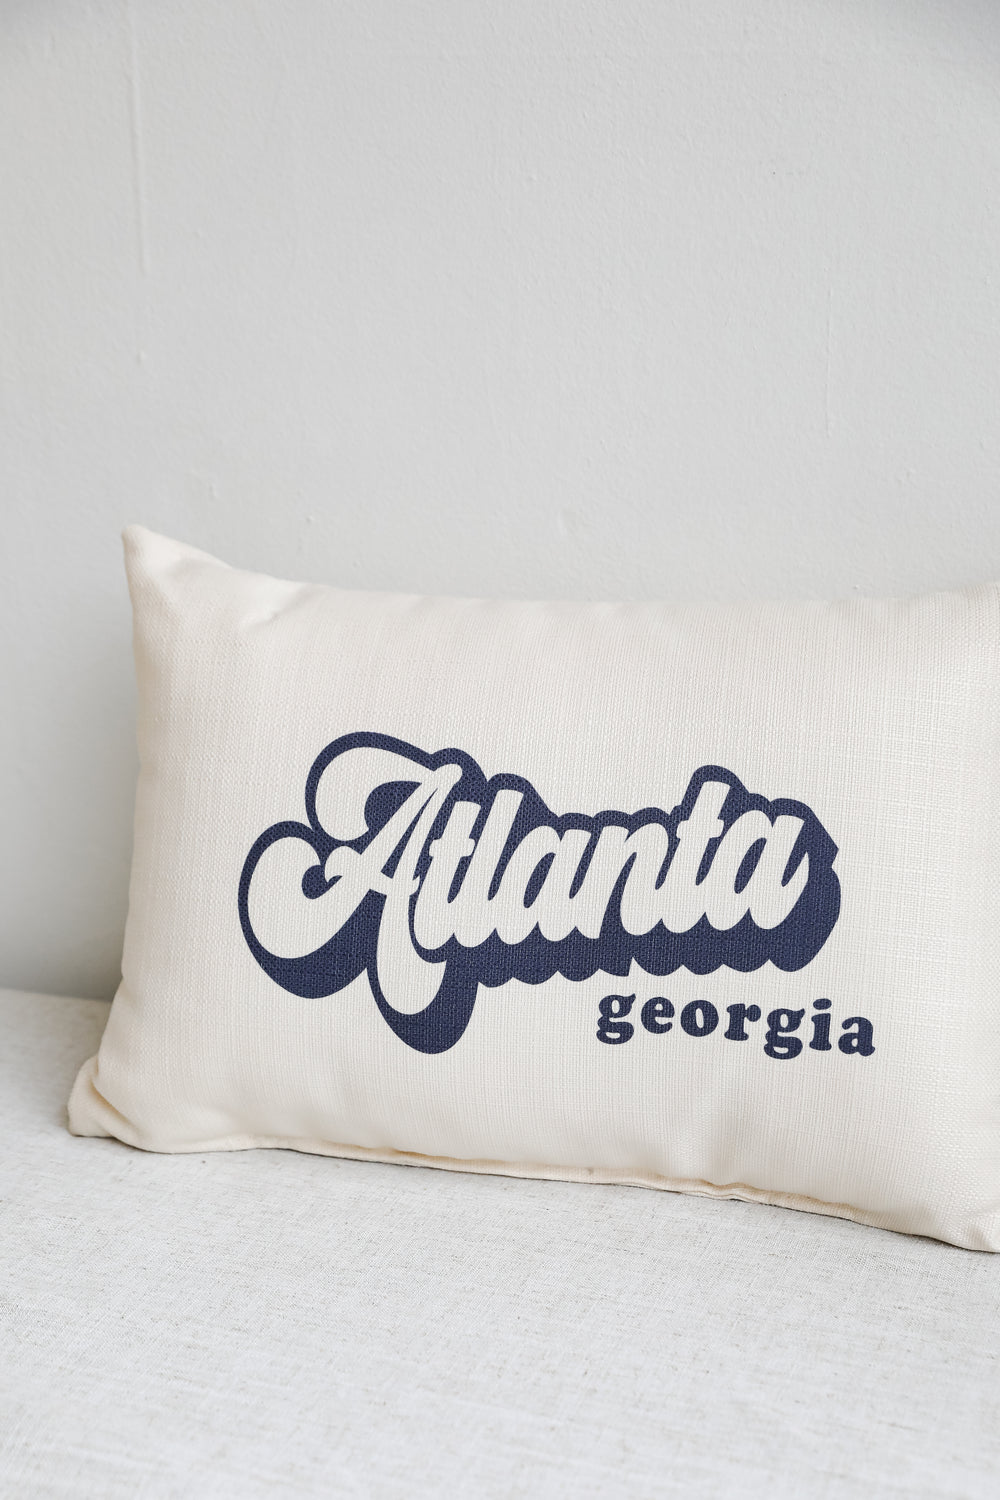 Atlanta Georgia Pillow close up